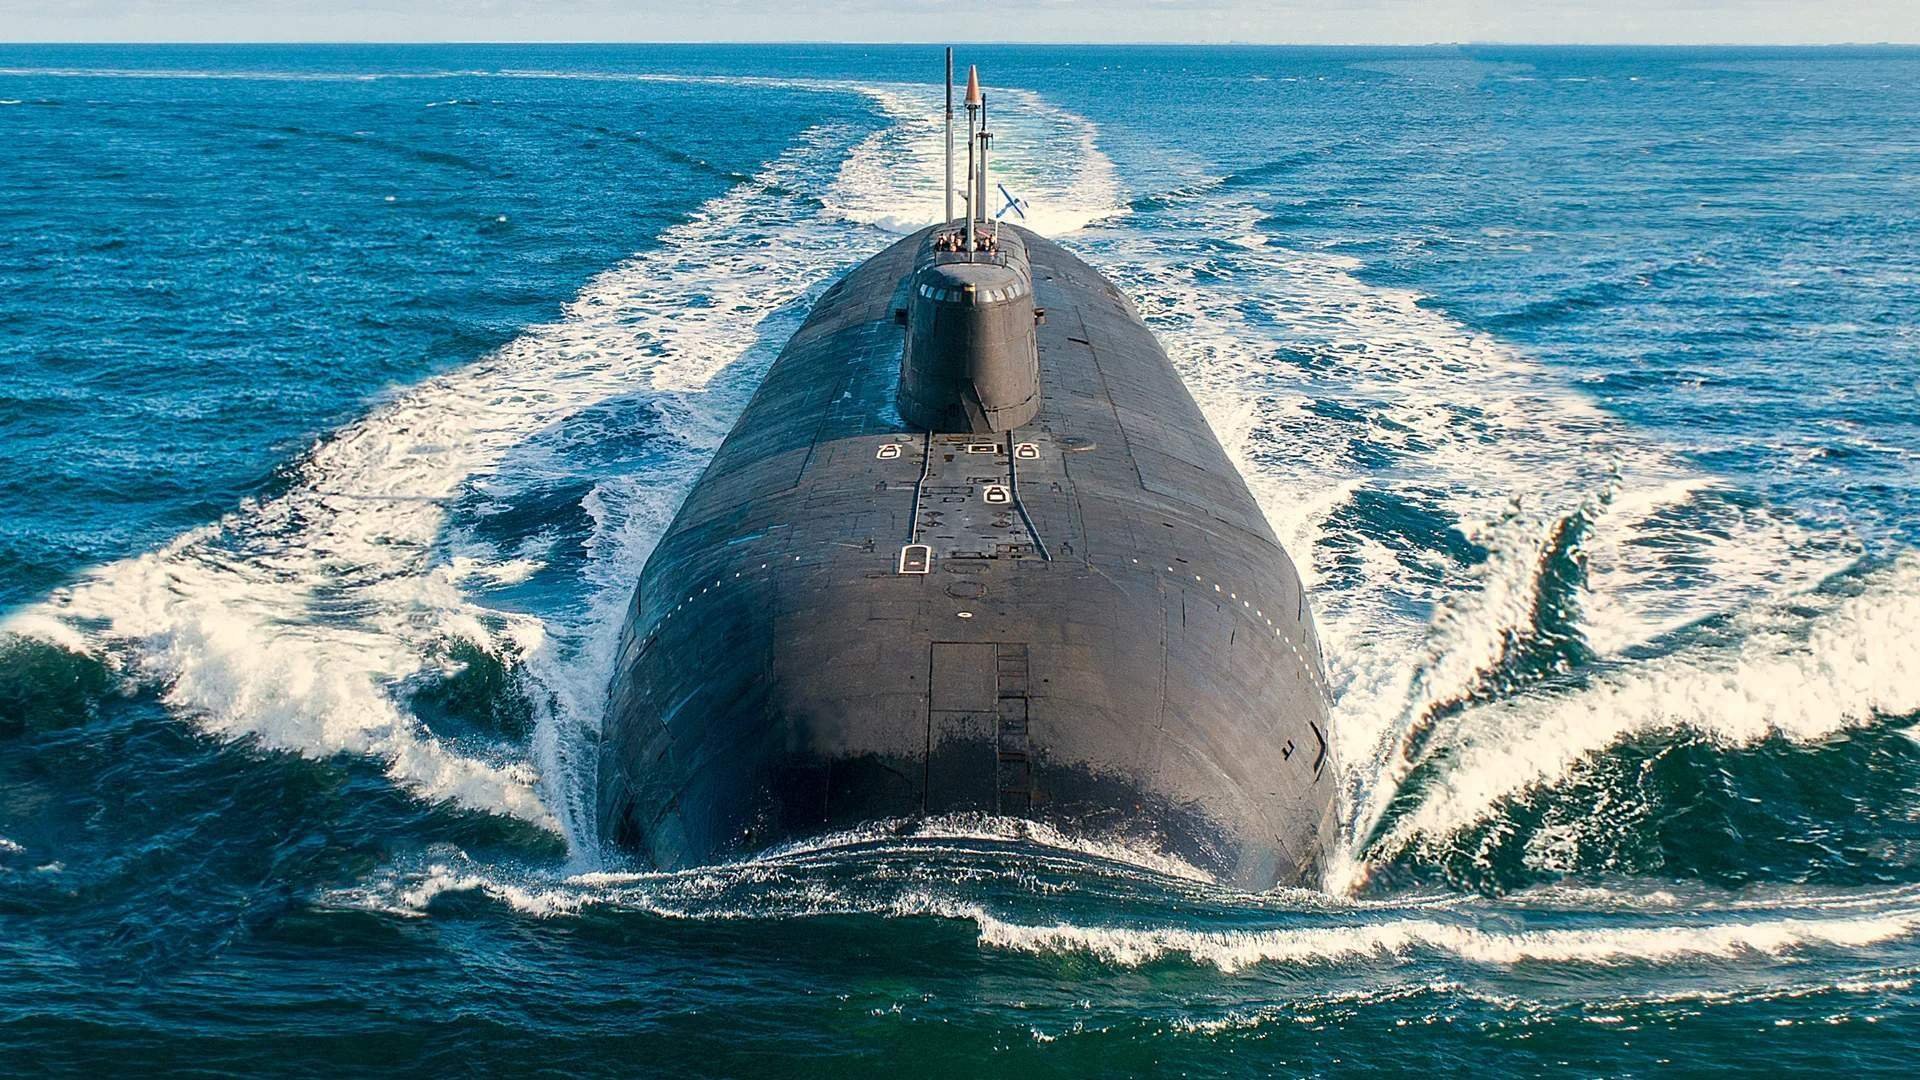 Про подводный флот. Подводная лодка субмарина. Подлодка Белгород Посейдон. Атомная подводная лодка ВМФ РФ. АПЛ атомная подводная лодка.